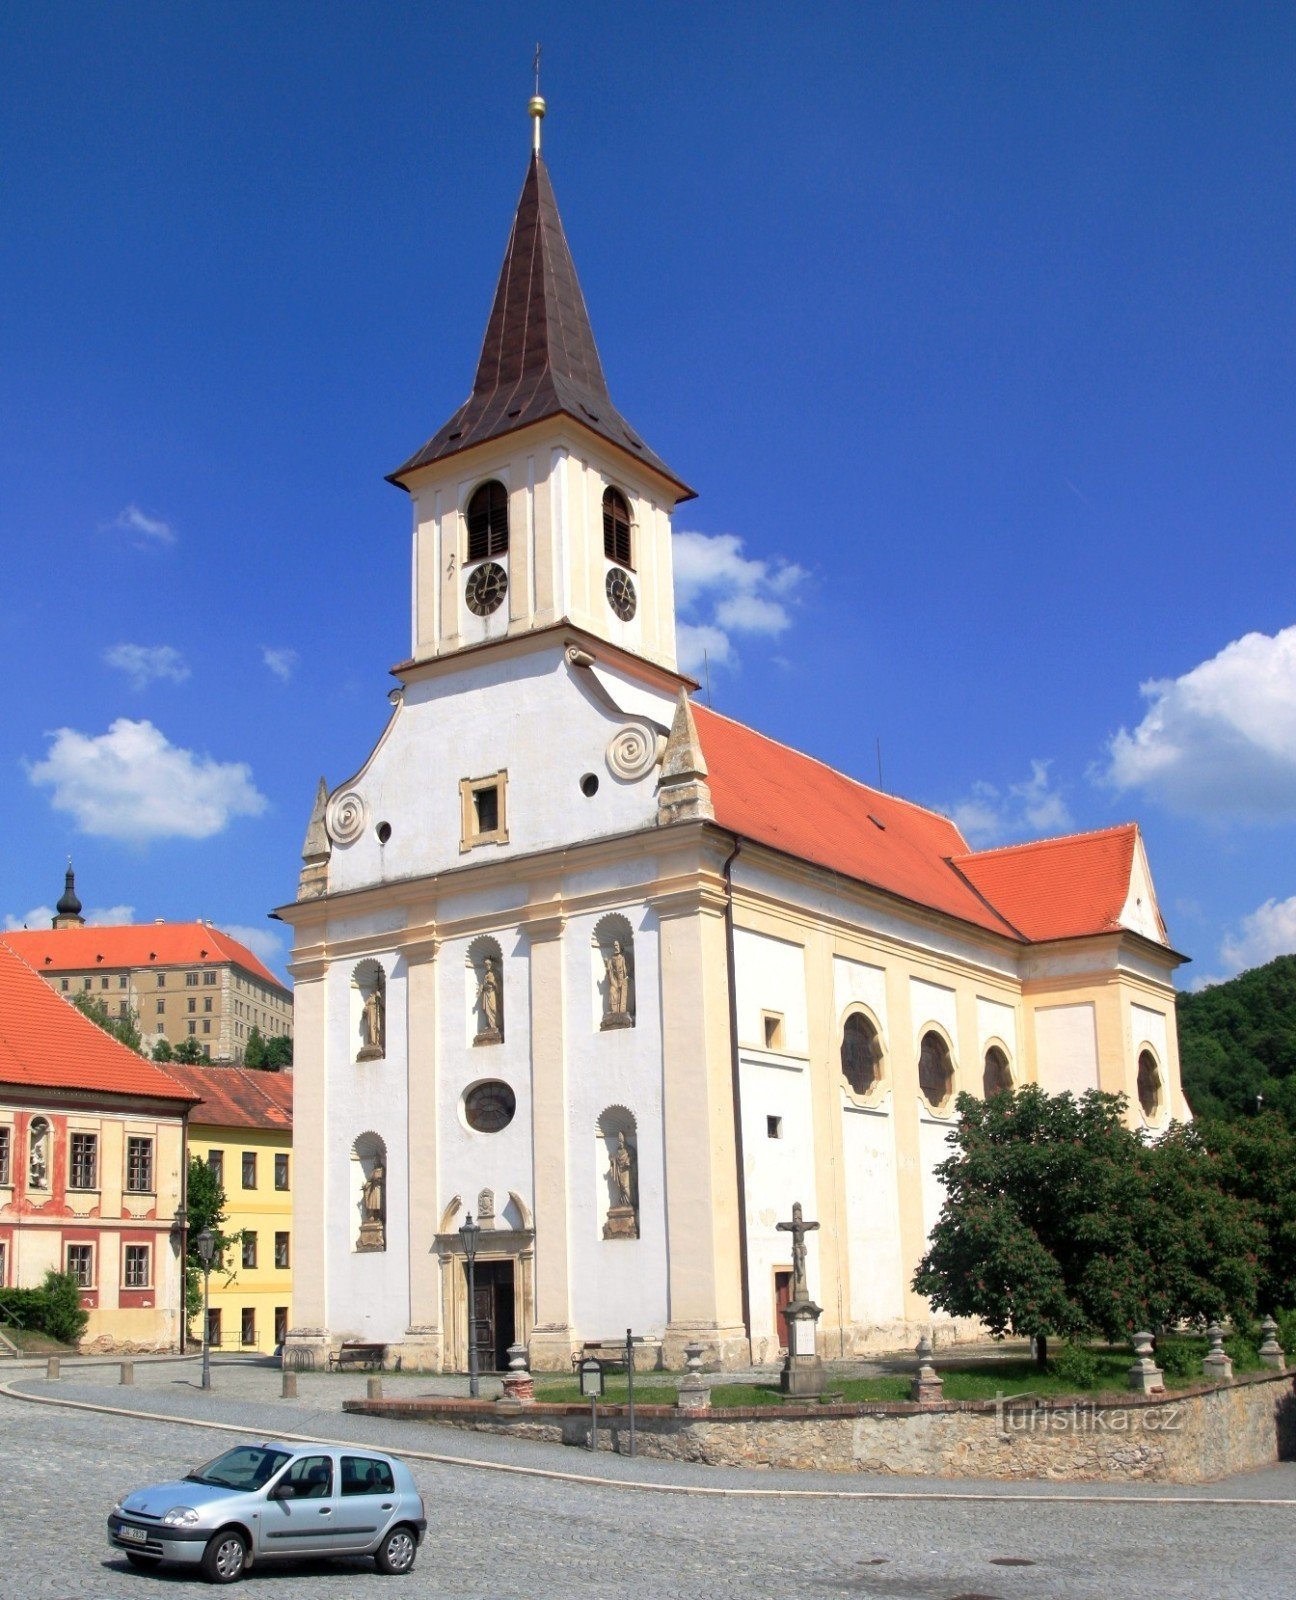 Náměšť nad Oslavou - Igreja de St. João Batista